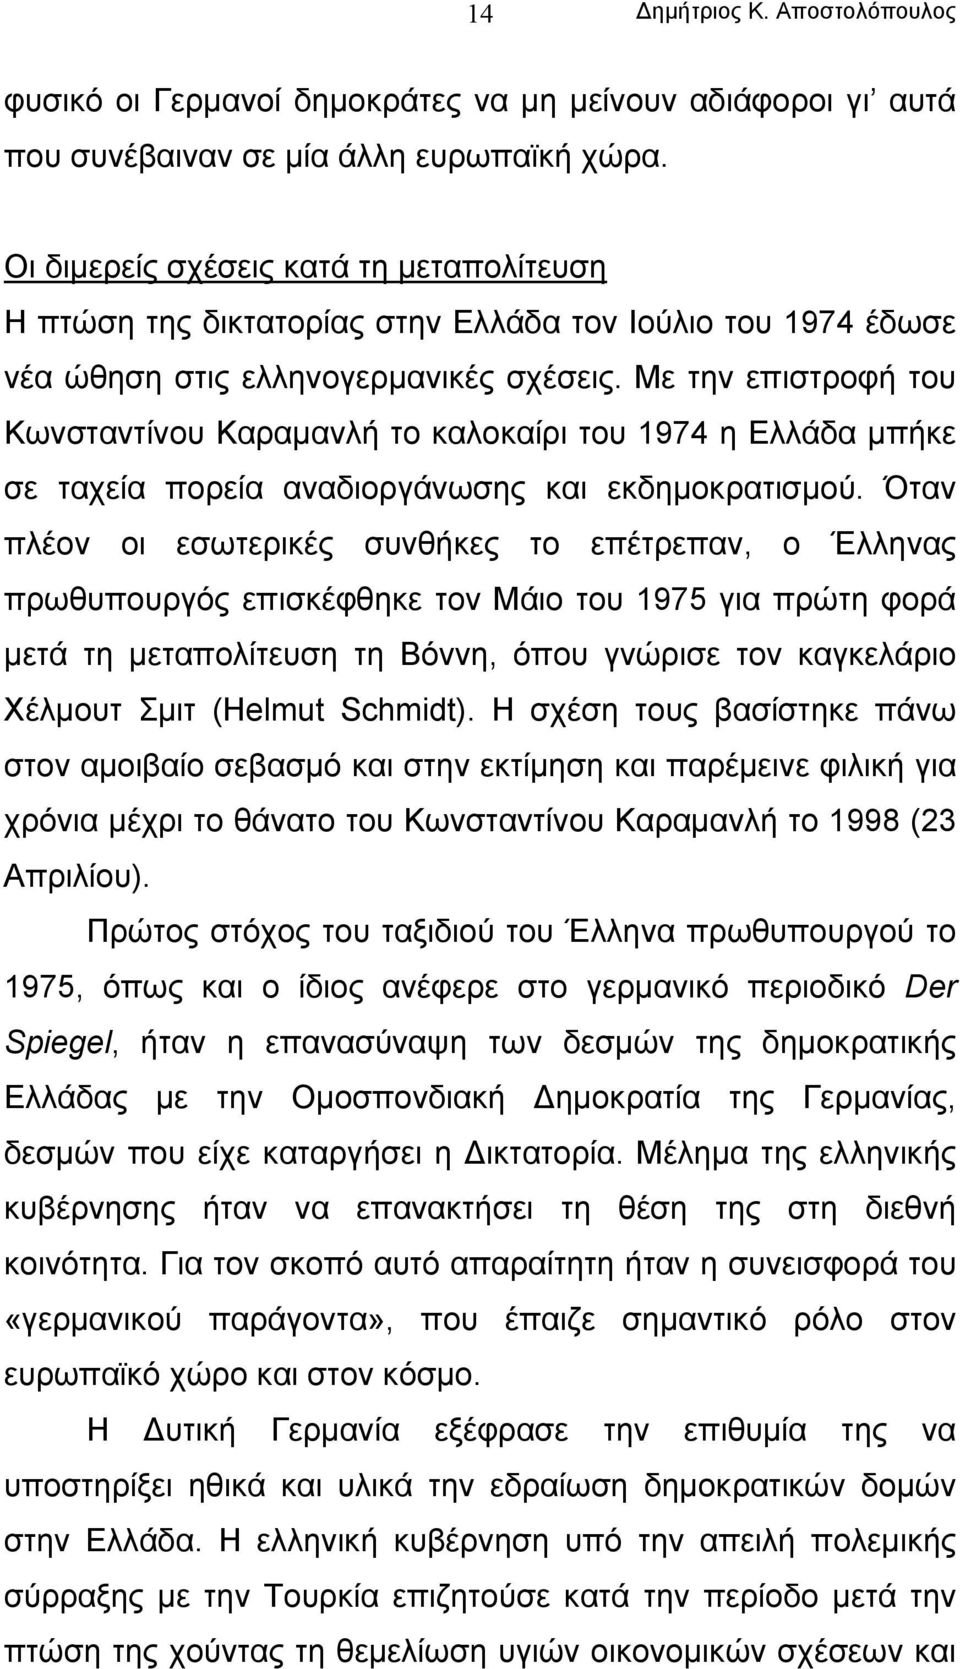 Με την επιστροφή του Κωνσταντίνου Καραµανλή το καλοκαίρι του 1974 η Ελλάδα µπήκε σε ταχεία πορεία αναδιοργάνωσης και εκδηµοκρατισµού.